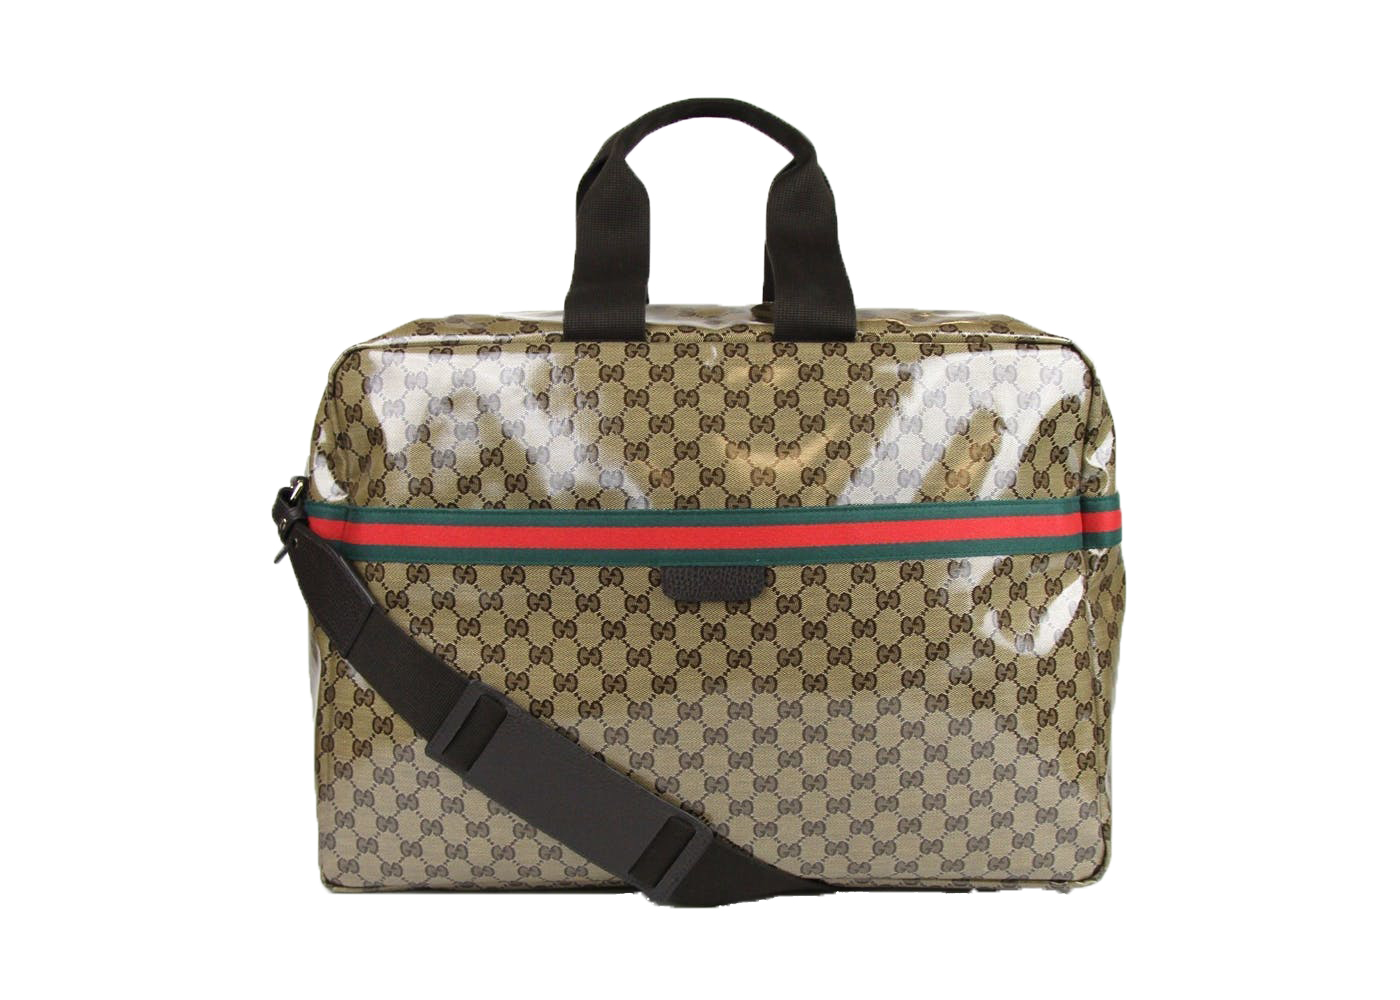 Gucci 60s vintage Travel bag – A Piece Lux